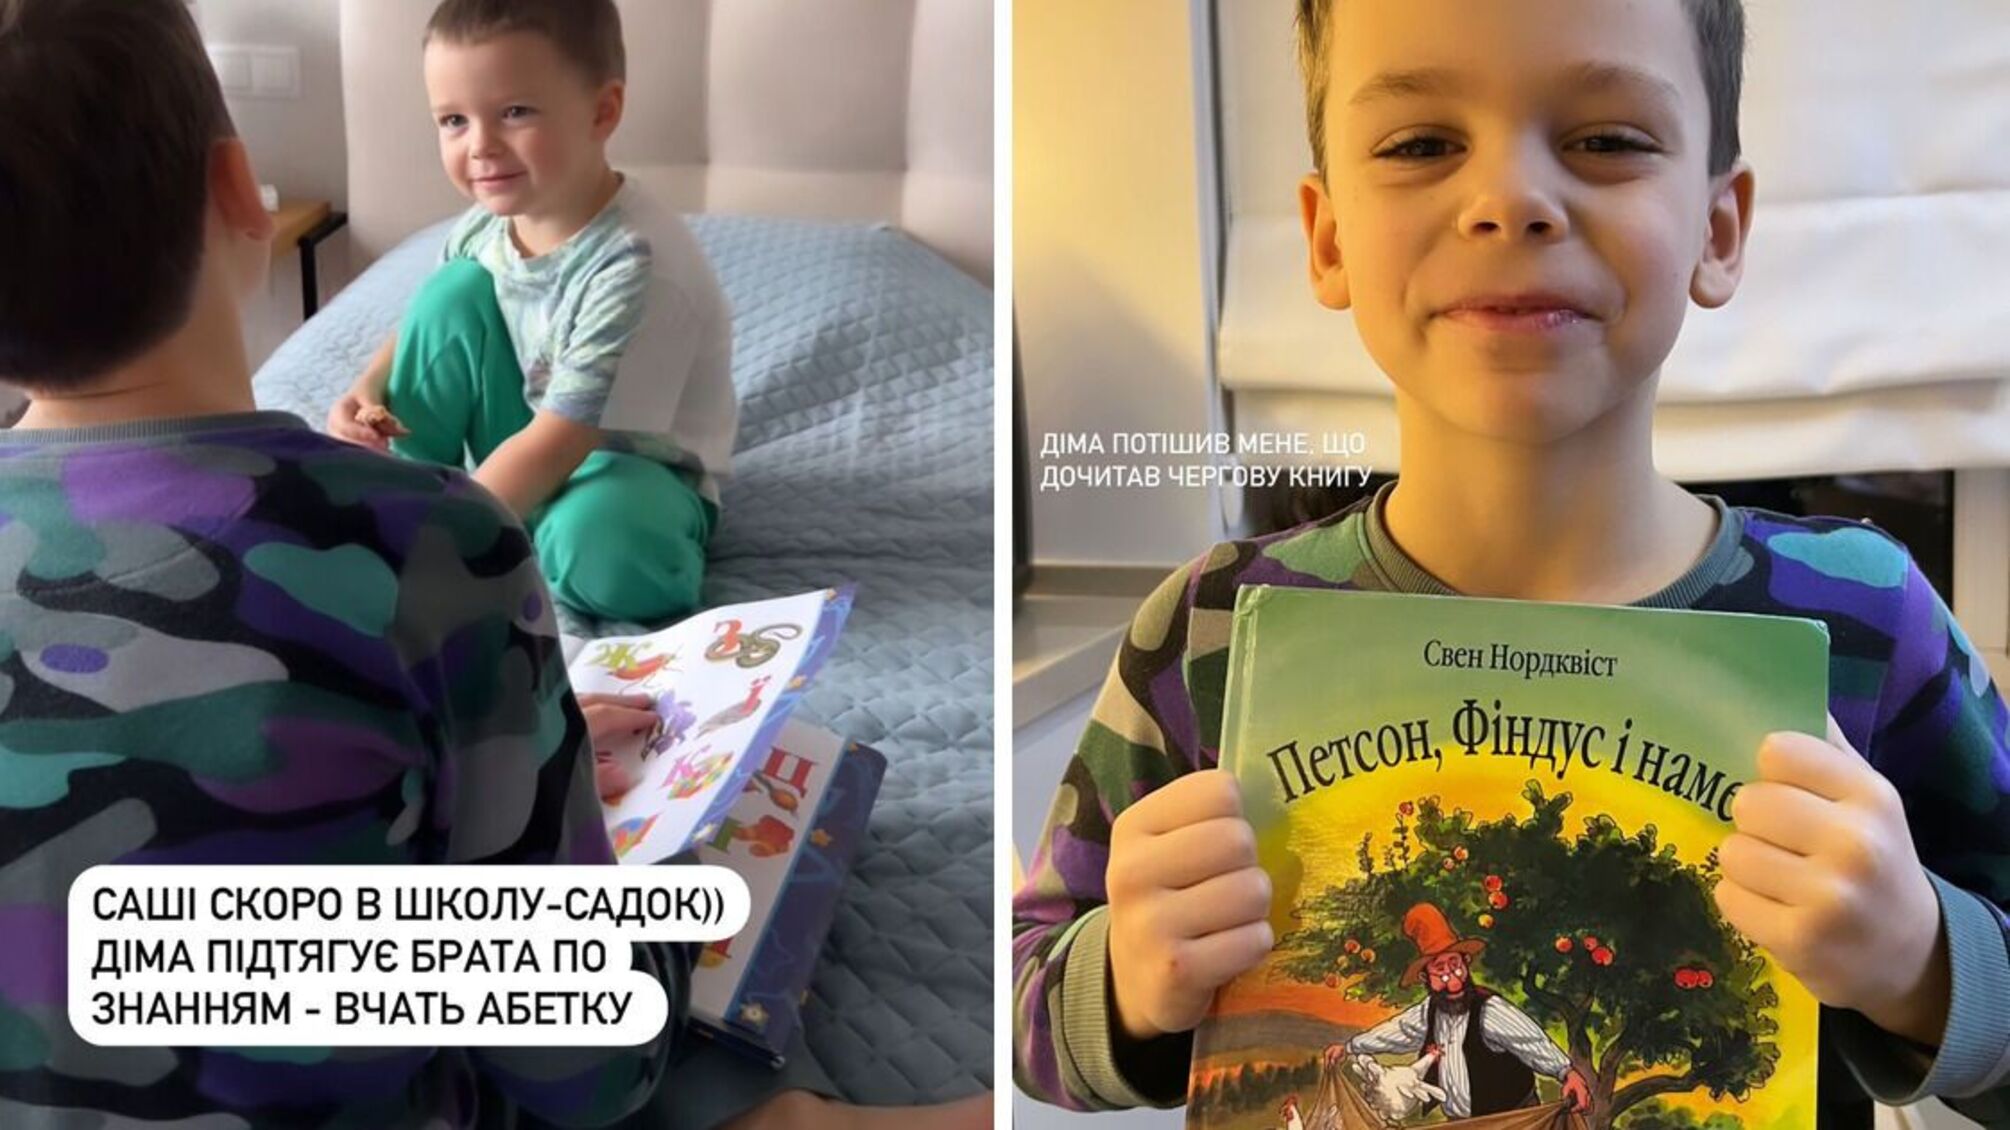 'Вчать абетку': Христина Решетнік показала, як сини допомагають один одному в навчанні